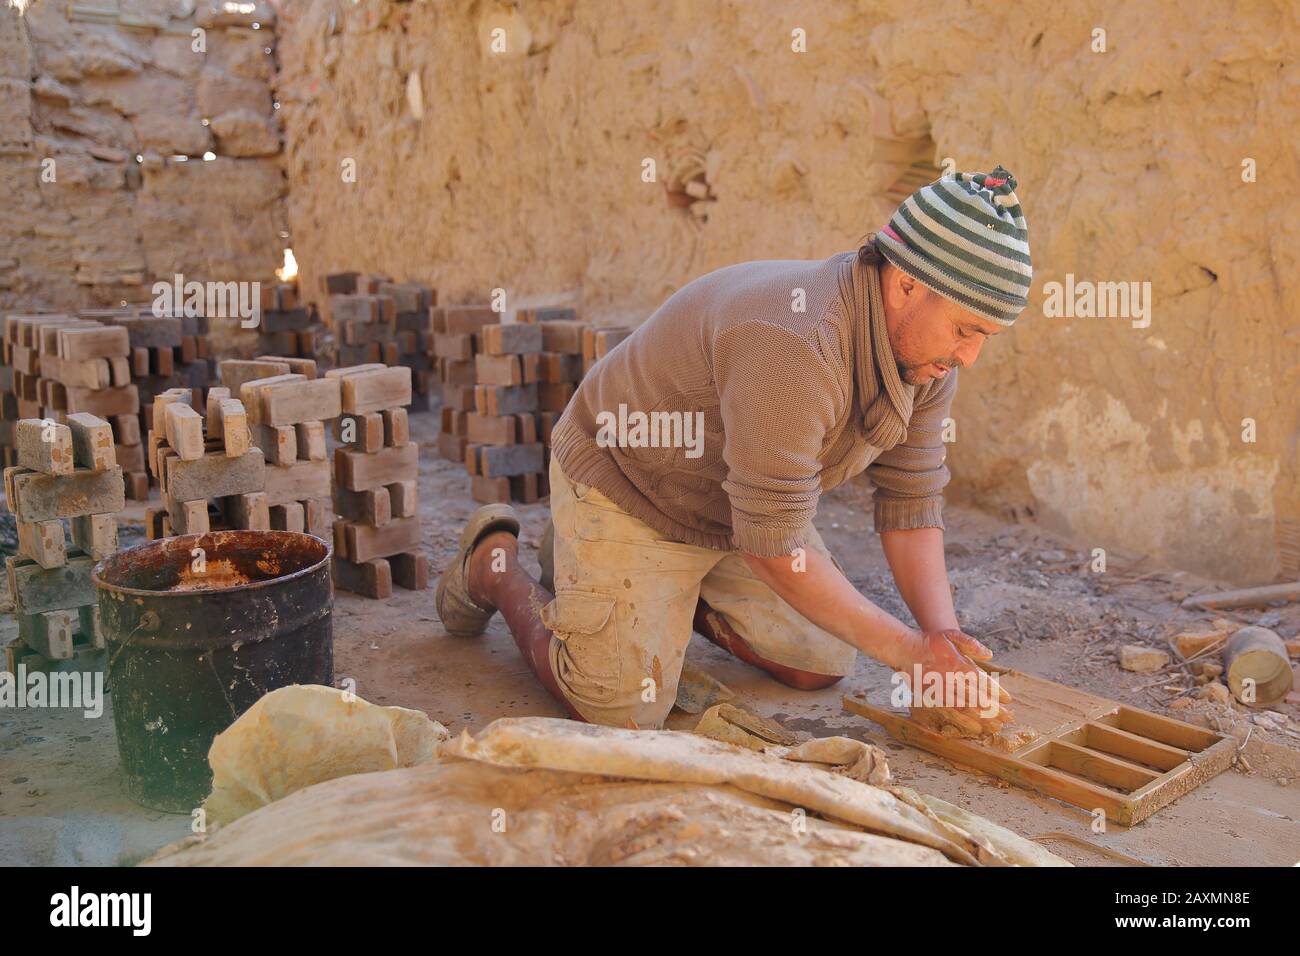 Tozeur, TUNESIA - 20. DEZEMBER 2019: Ein ortskundiger Arbeiter, der in einer Ziegelei in traditioneller Weise Backsteine macht. Mit einem Holzrahmen werden die Backsteine geformert. Stockfoto